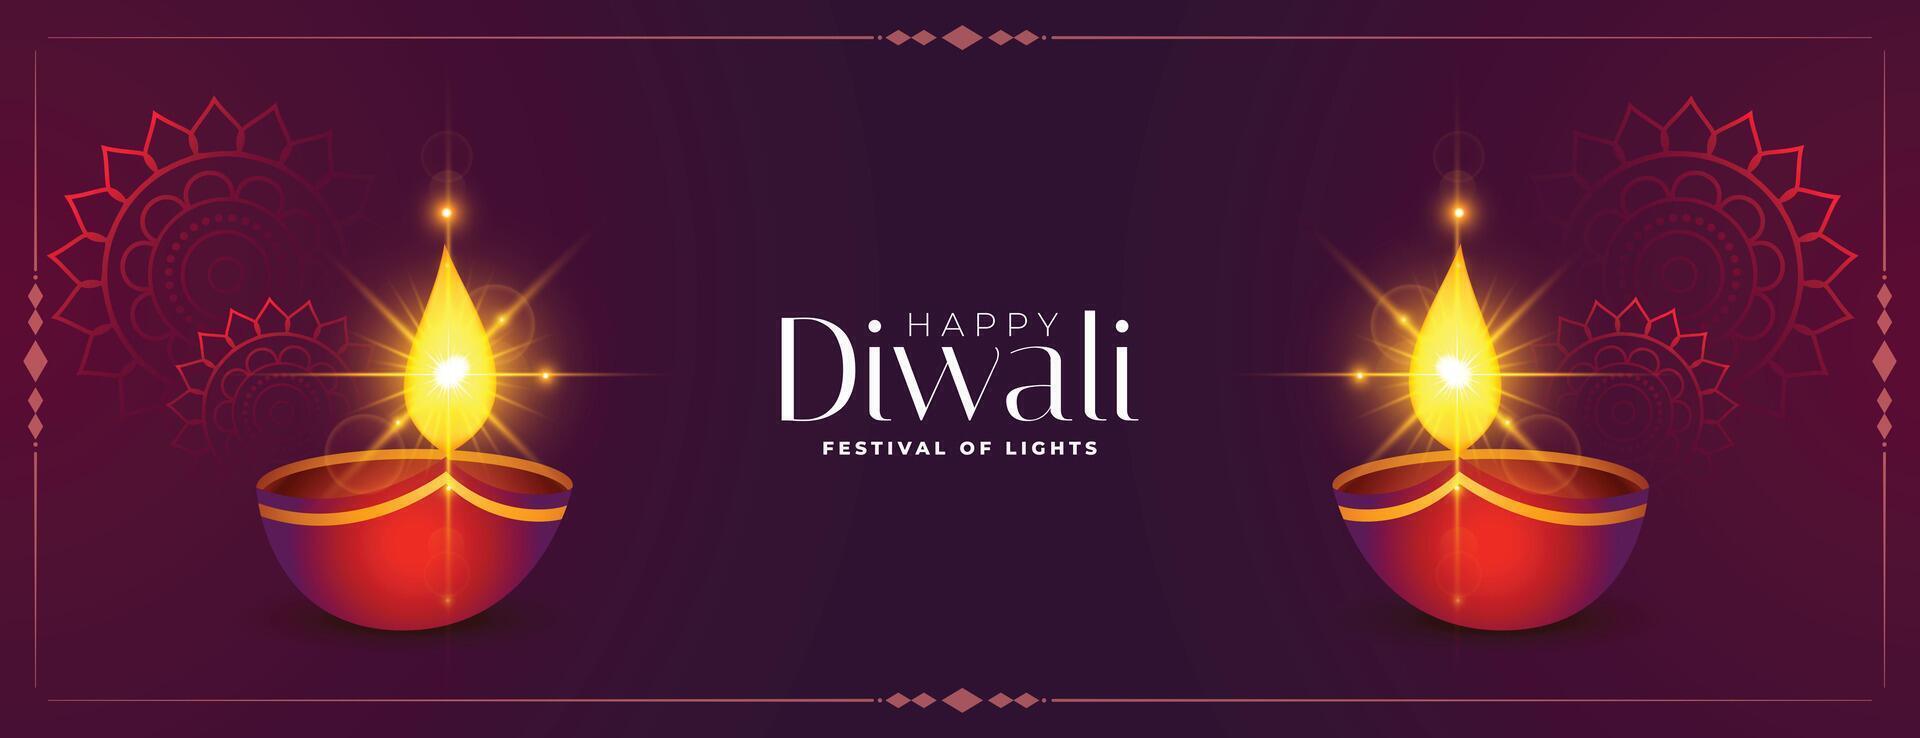 contento diwali brillante diya festival bandera diseño vector